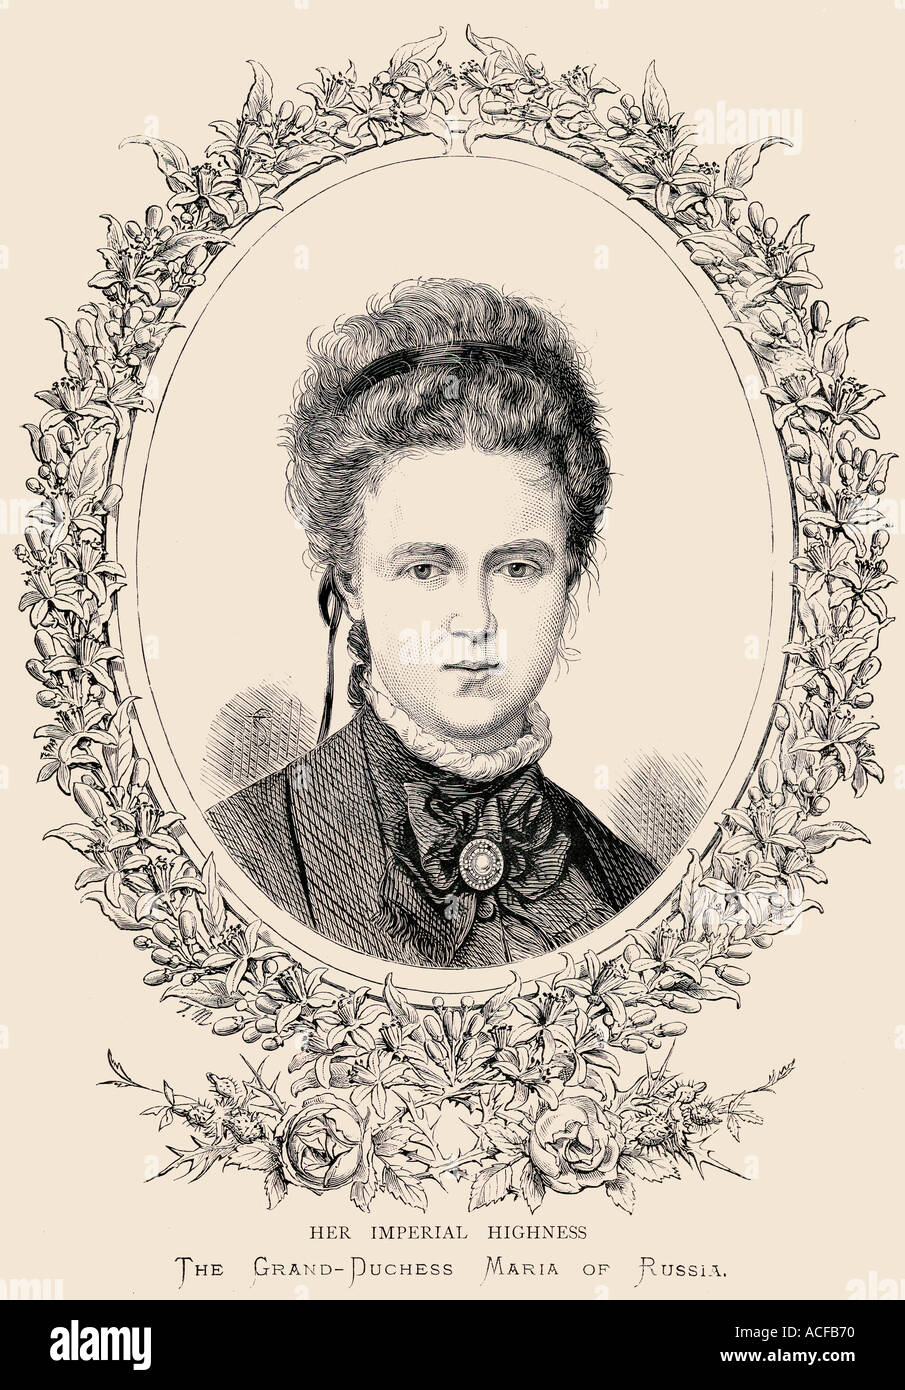 Großfürstin Maria Alexandrowna von Russland, 1853 - 1920. Später Herzogin von Edinburgh und der Herzogin von Sachsen-Coburg und Gotha. Stockfoto